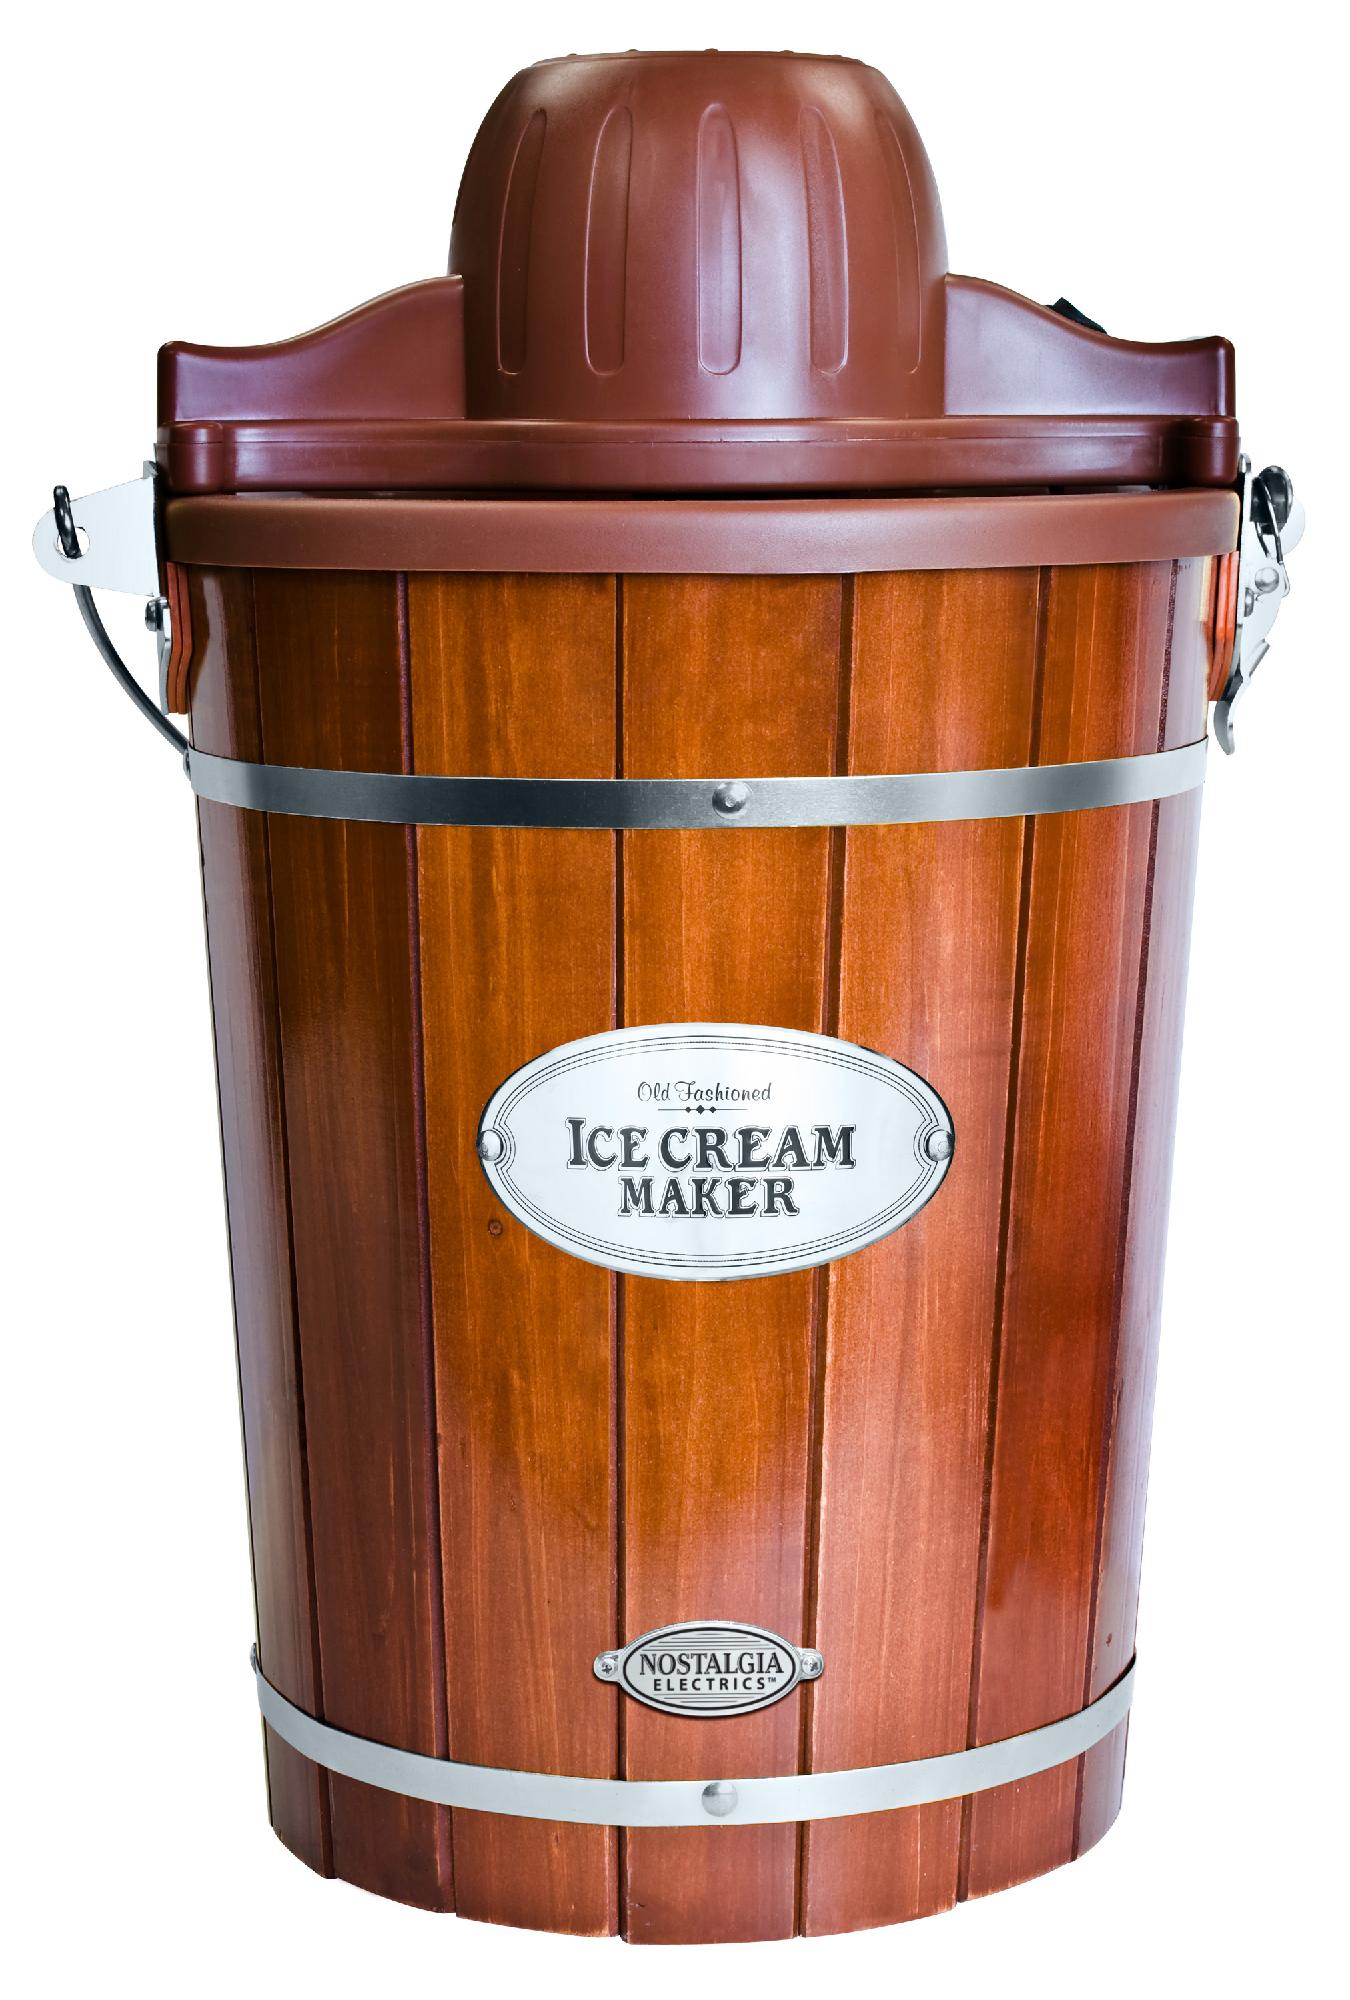 Maximatic Elite Gourmet 6 quart Old Fashioned Ice Cream Freezer